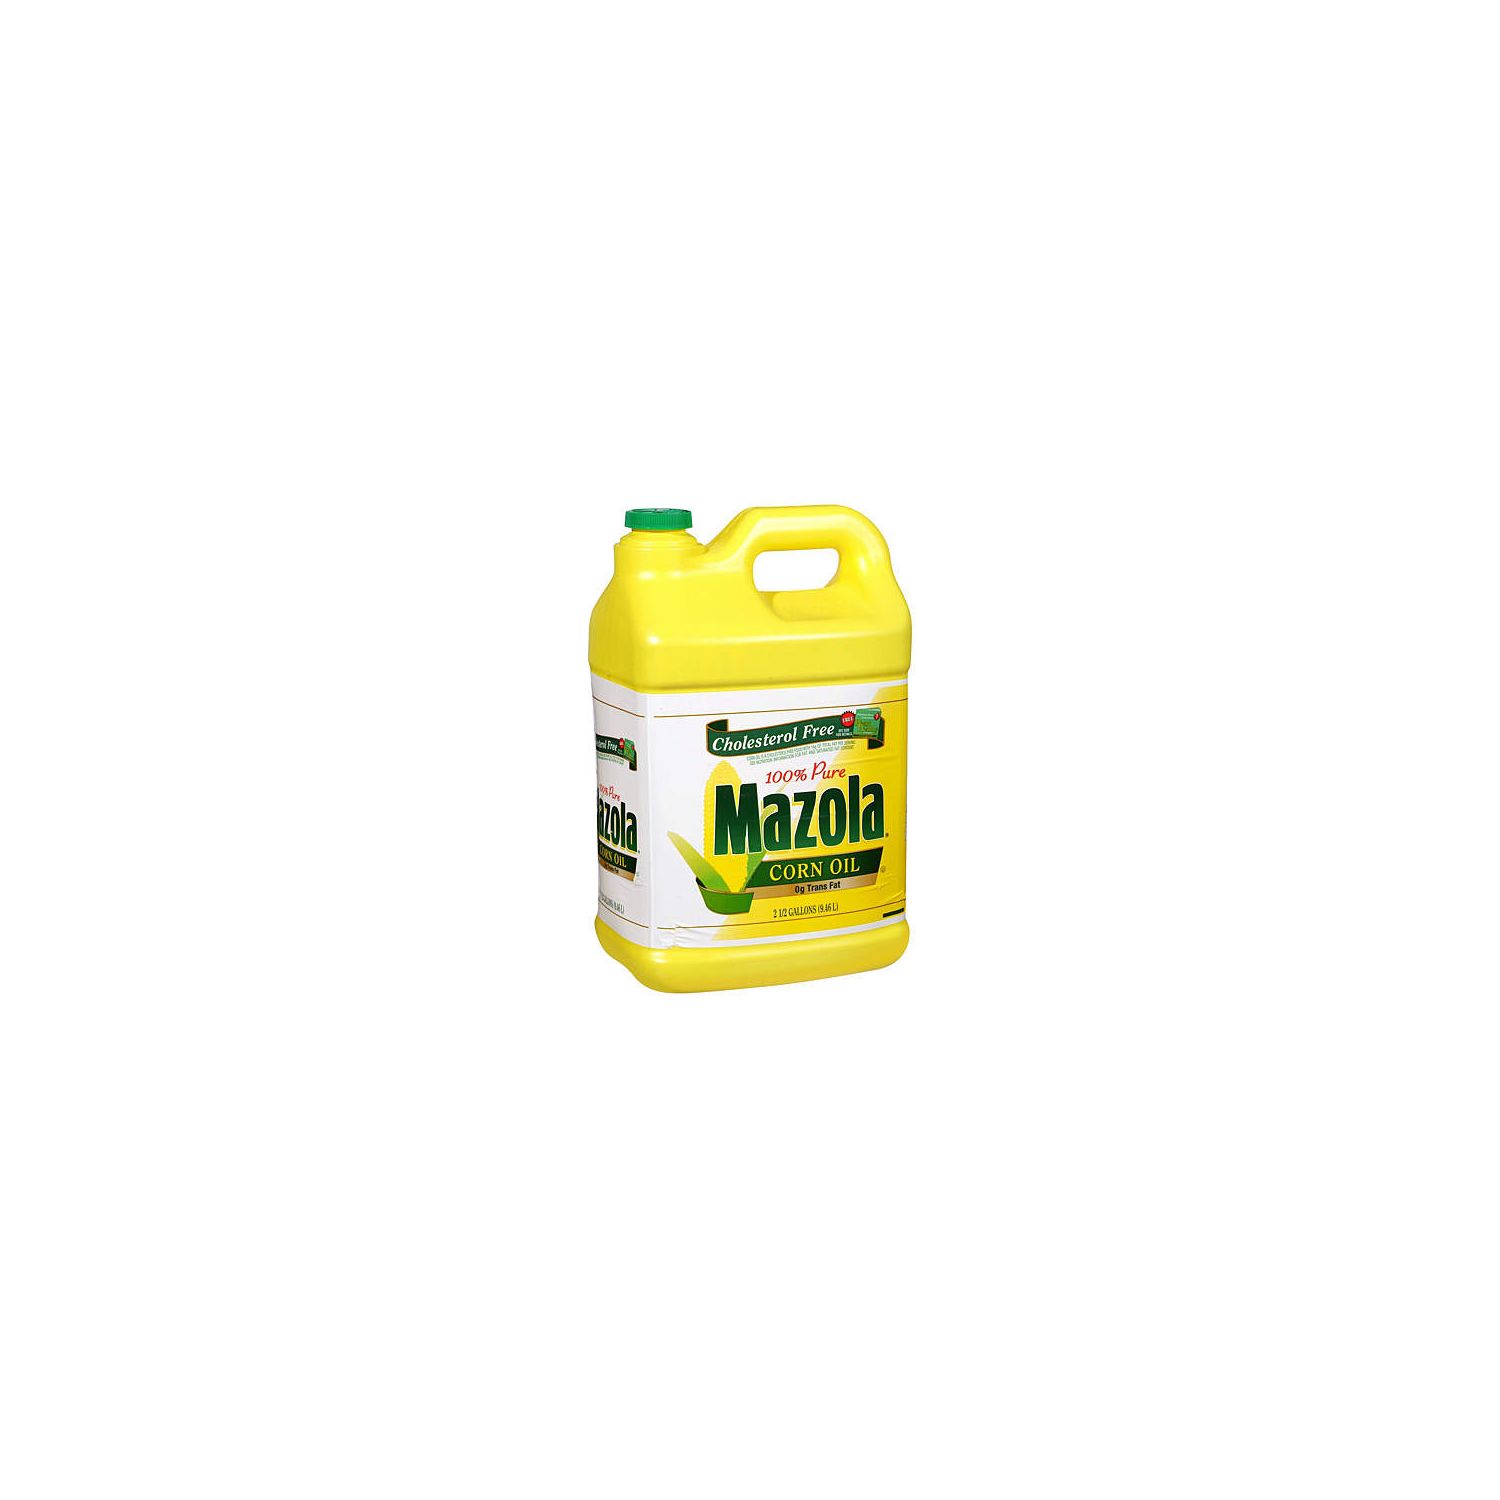 Mazola Corn Oil - 2.5 Gallon Jug